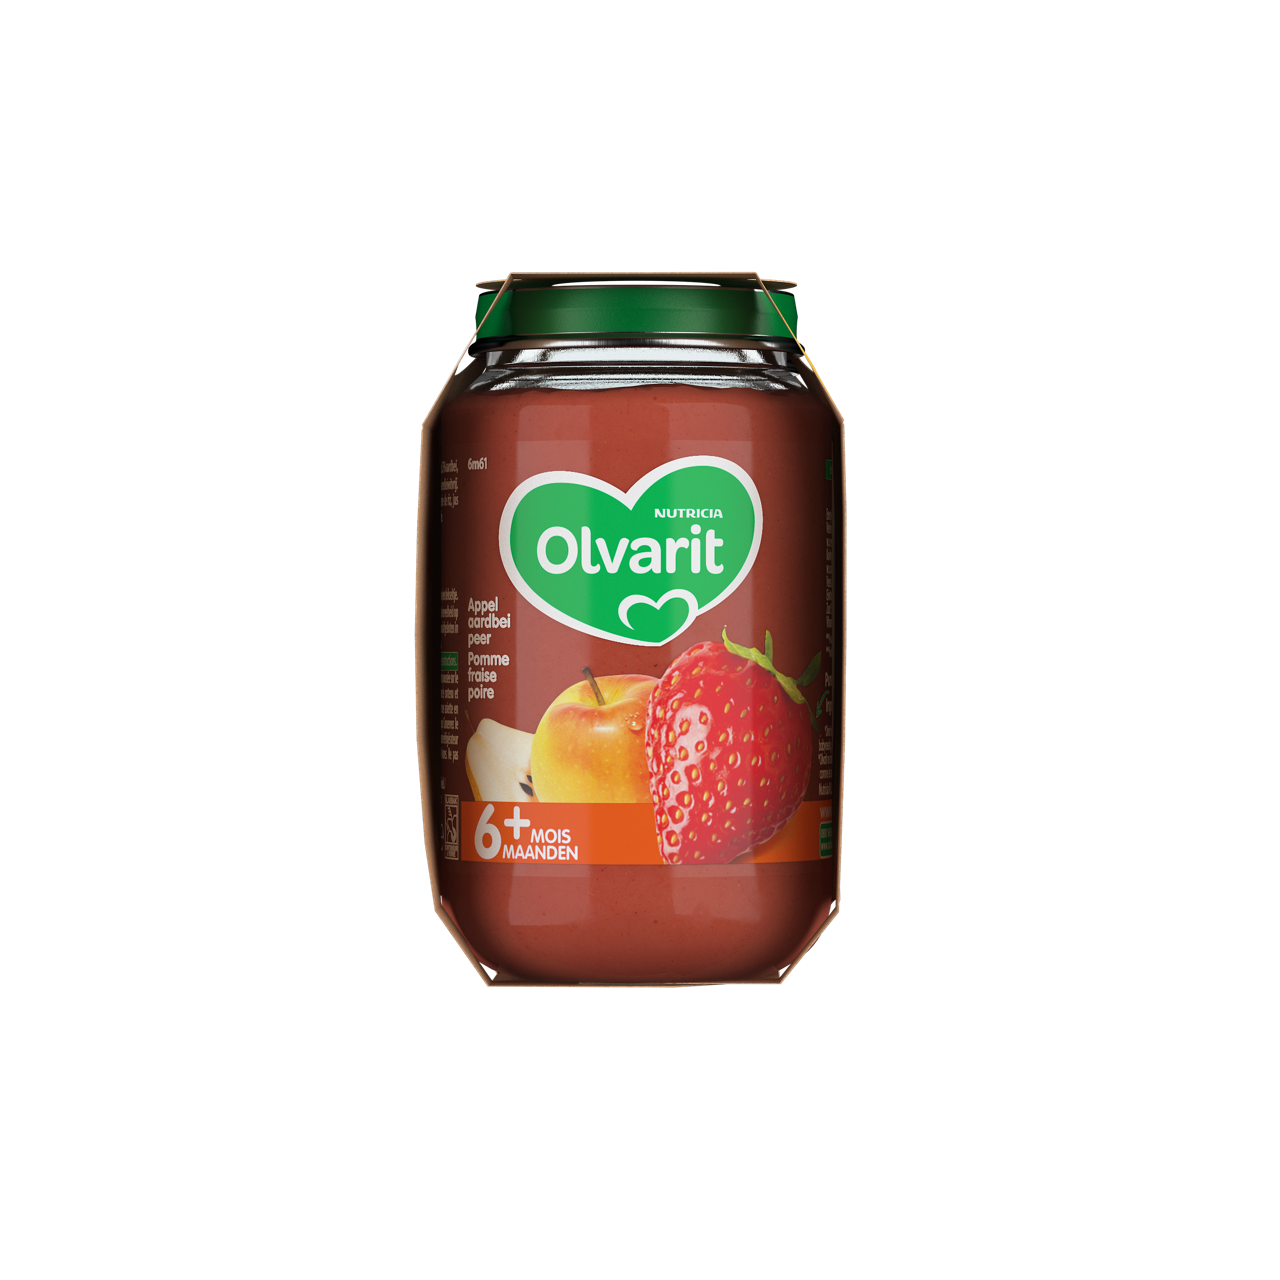 Olvarit Pomme Fraise Poire. Consultez notre site web Olvarit.be pour plus d'info sur alimentation pour bébé et les produits Olvarit.